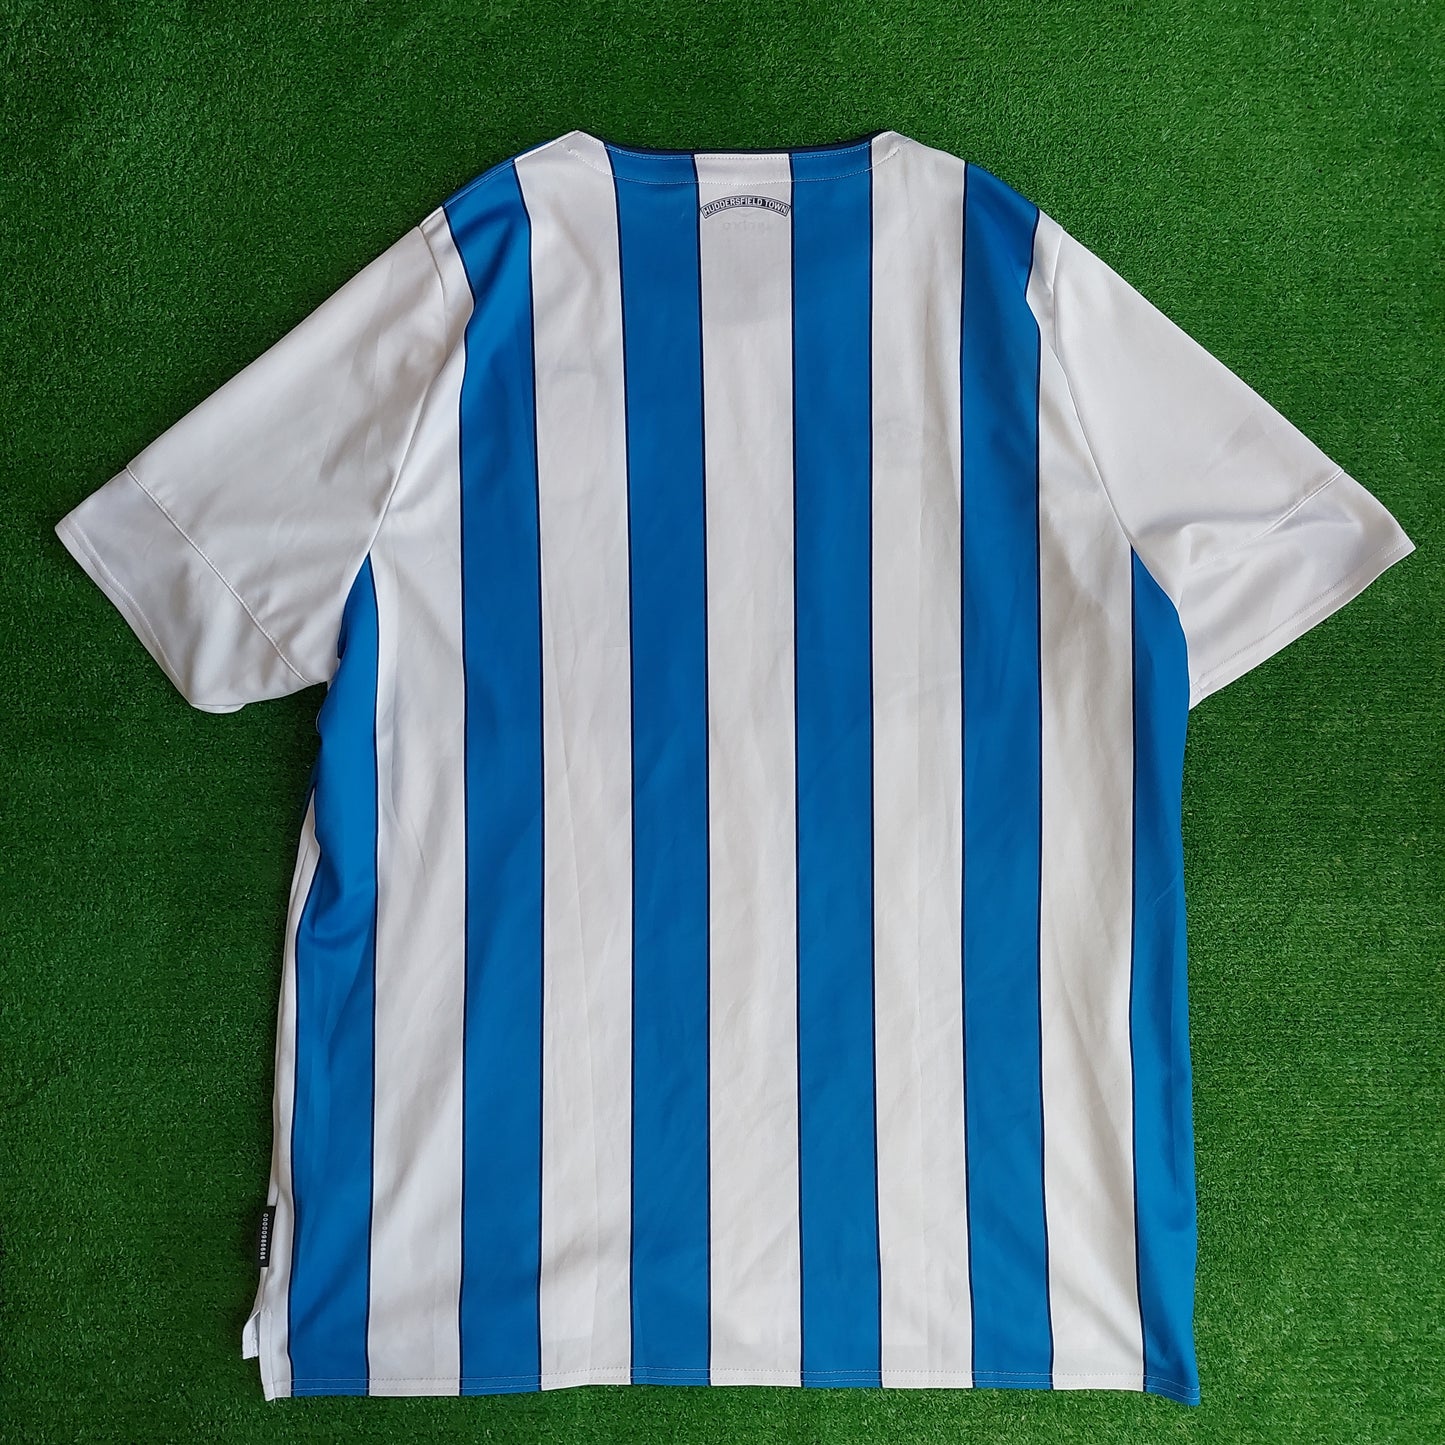 Huddersfield Town 2019/20 Home Shirt (Excellent) - Size 3XL